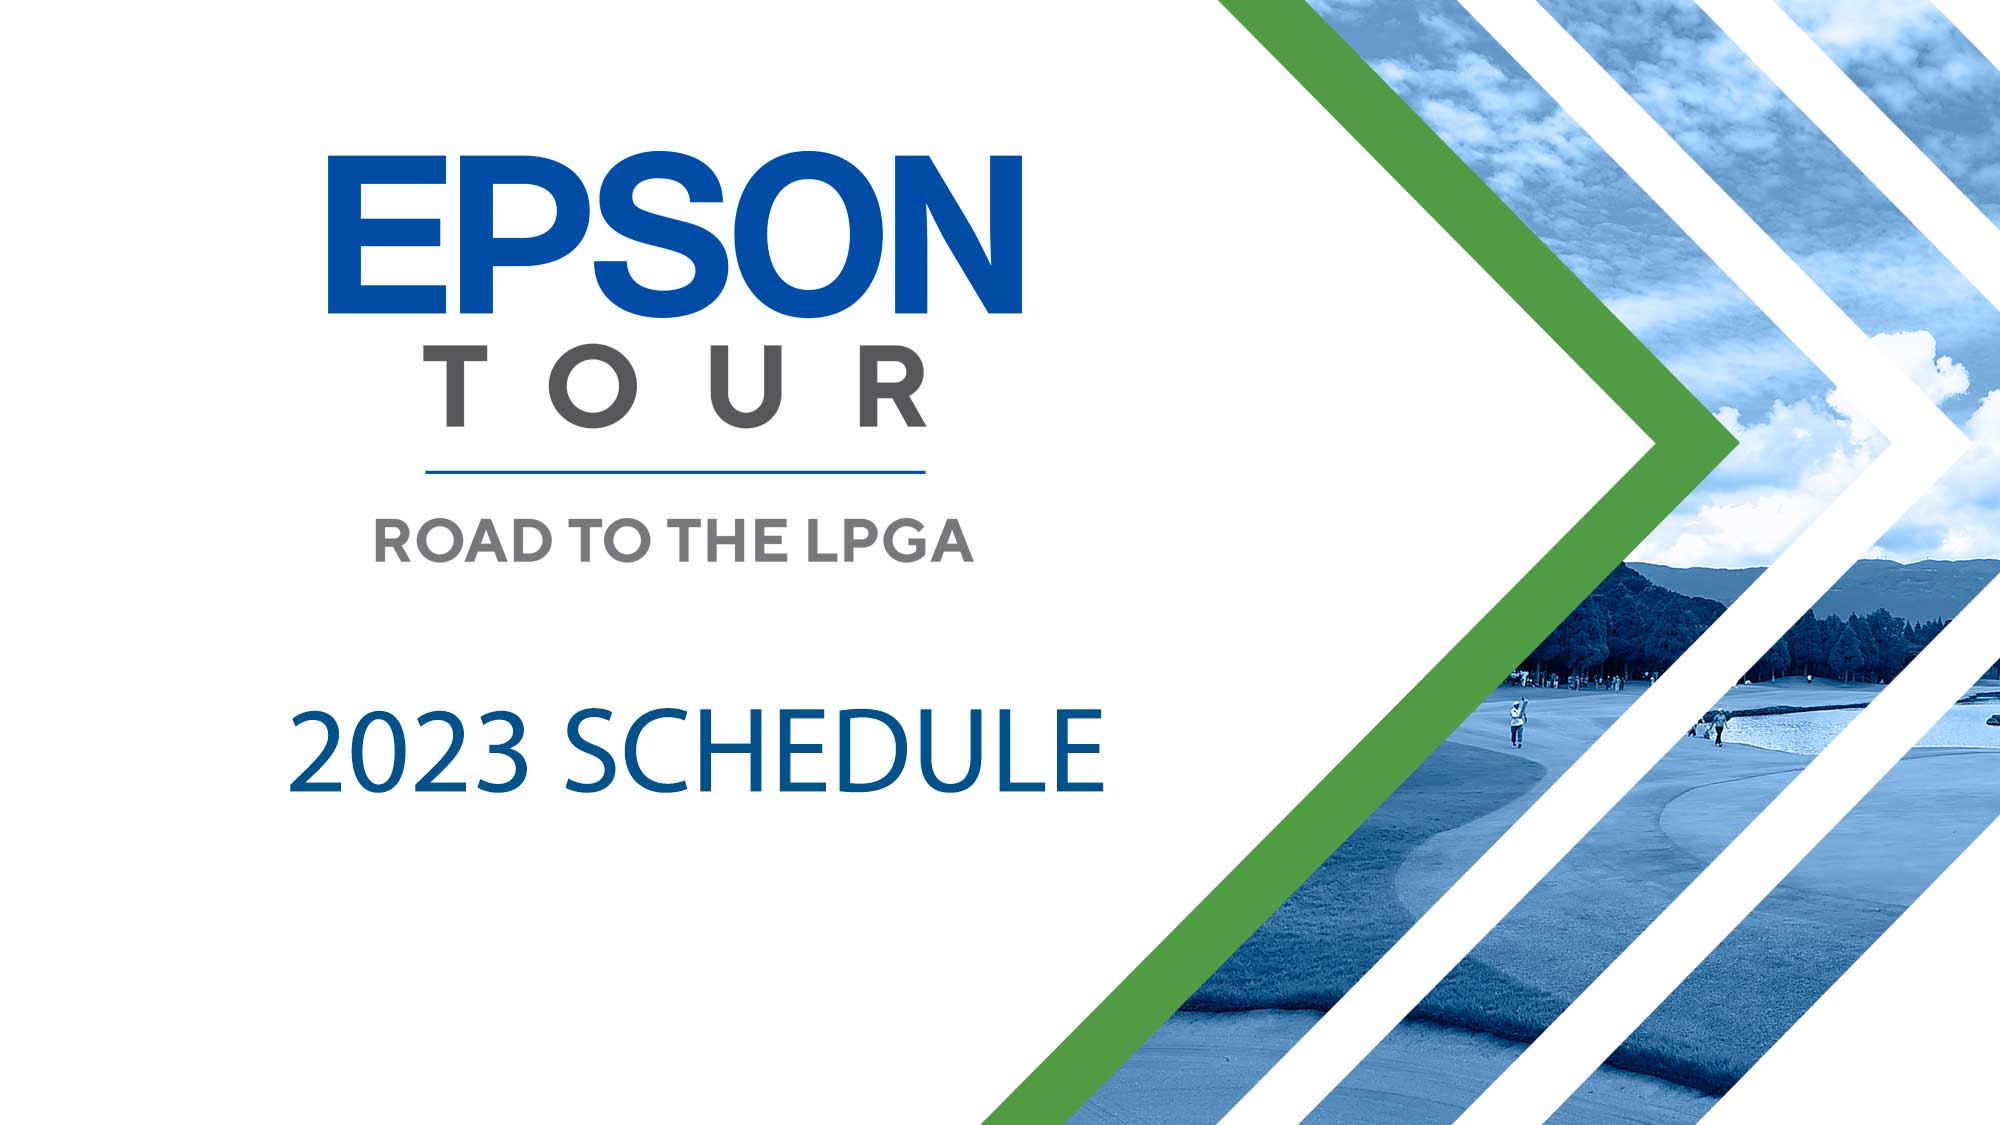 epson tour schedule 2023